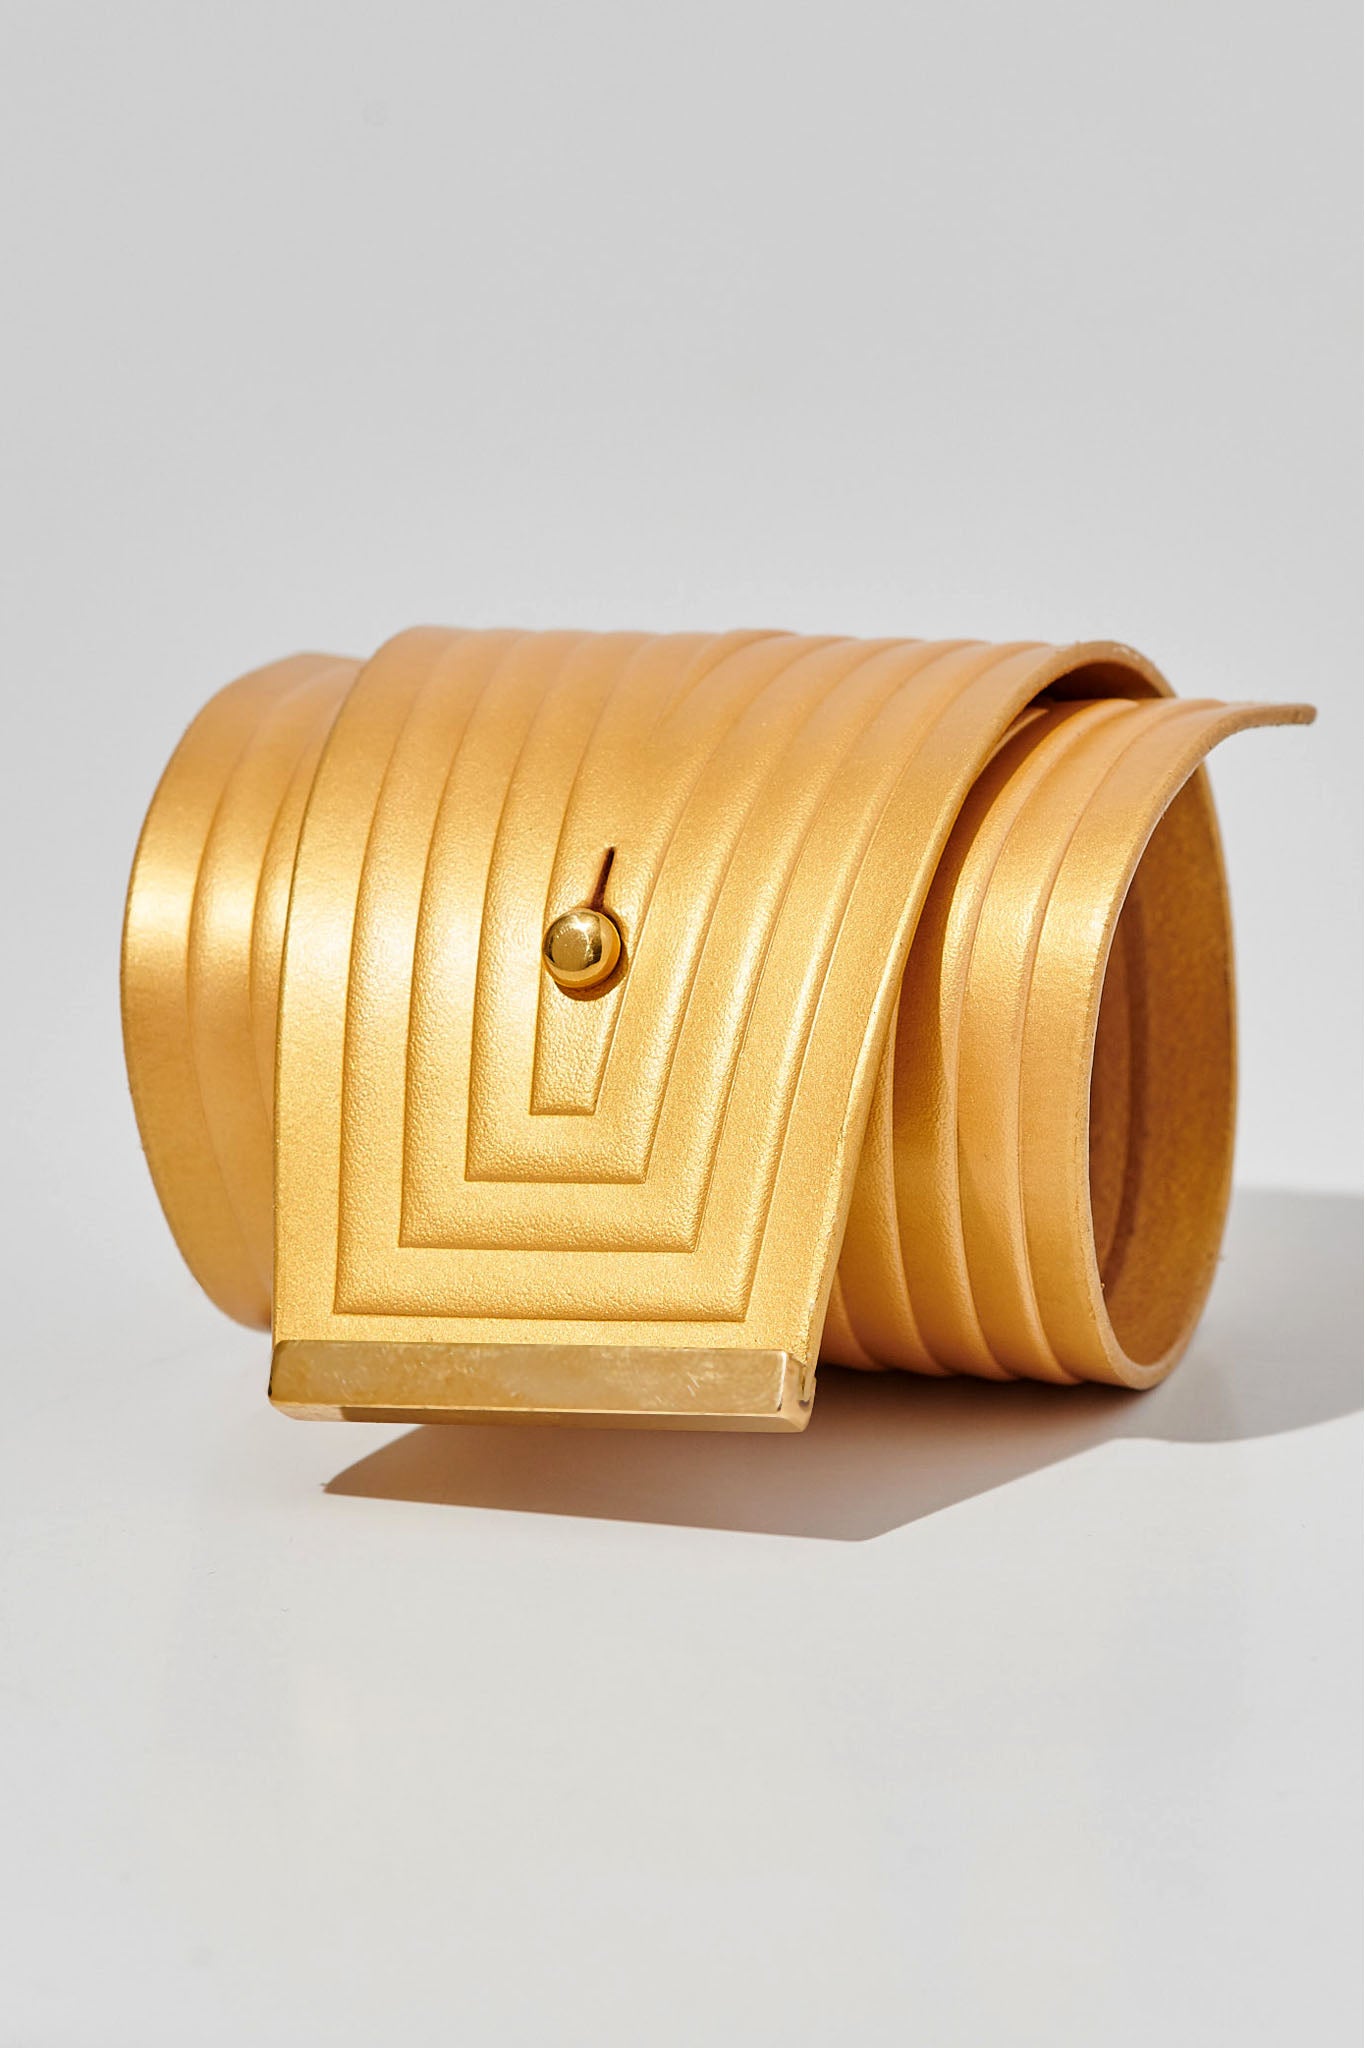 Leigh Schubert Linear Wrap Gold.